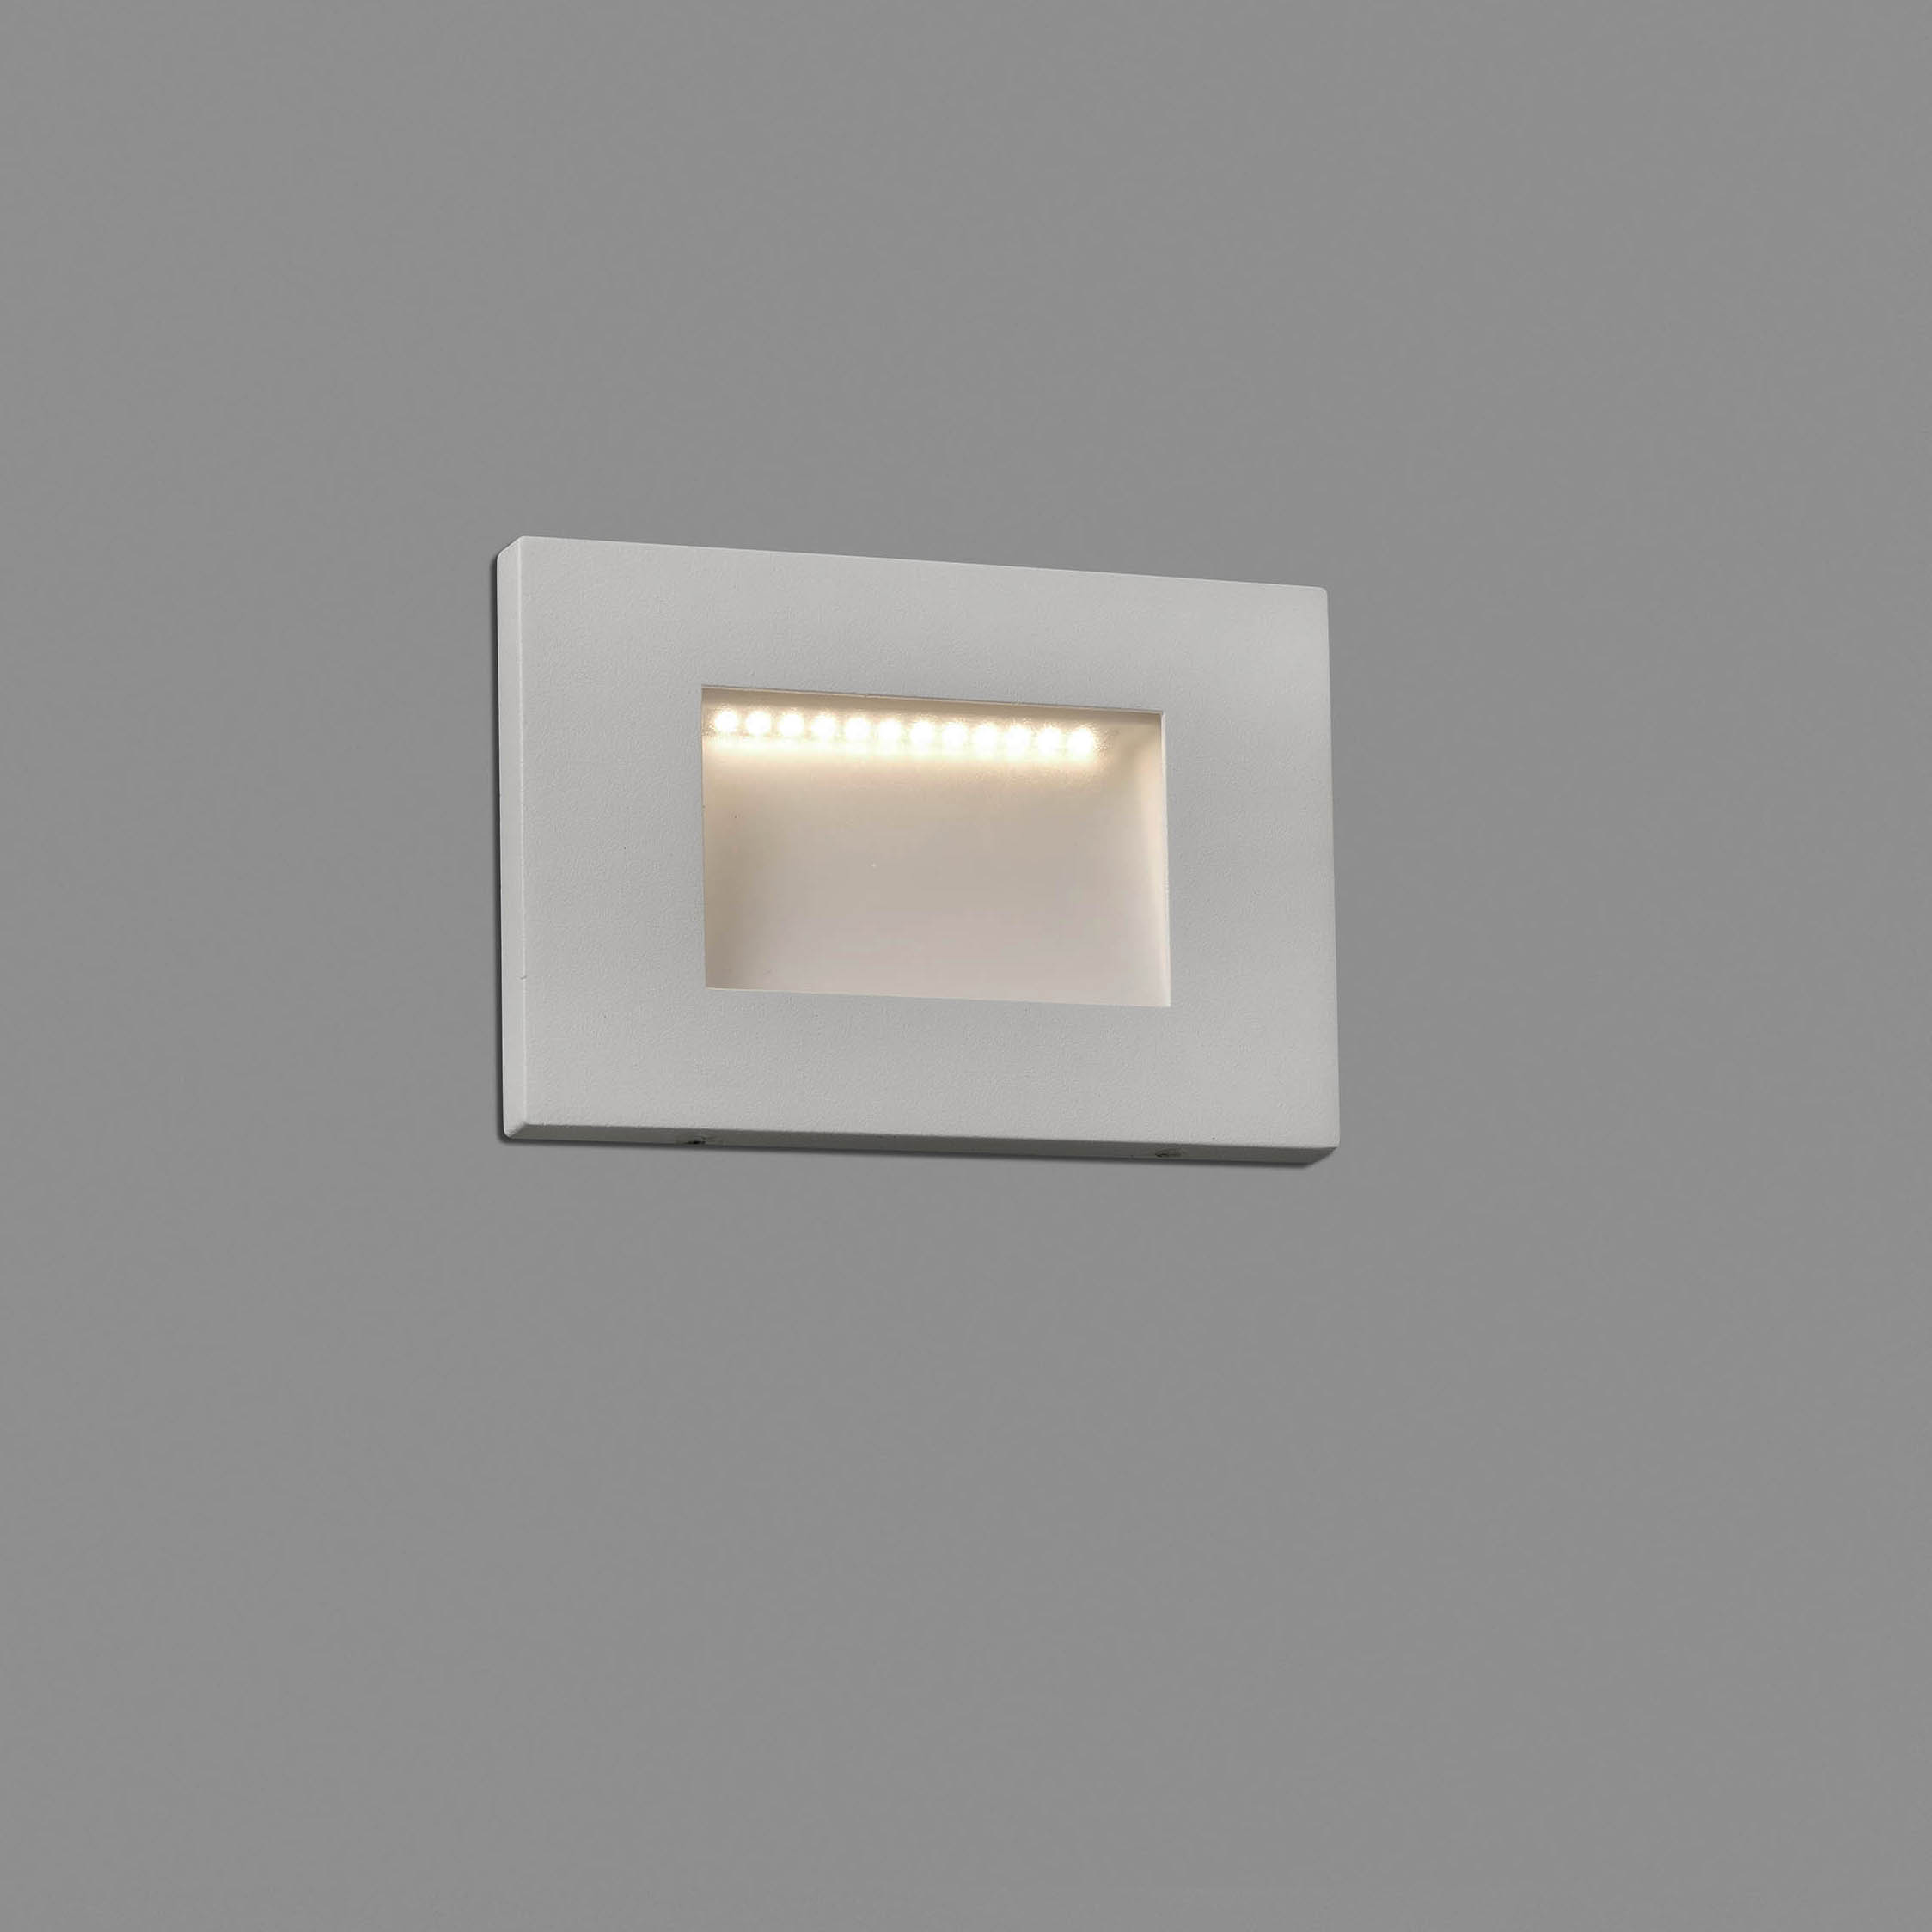 Spot LED incastrabil de exterior IP65 iluminat ambiental SPARK-1 alb 70163